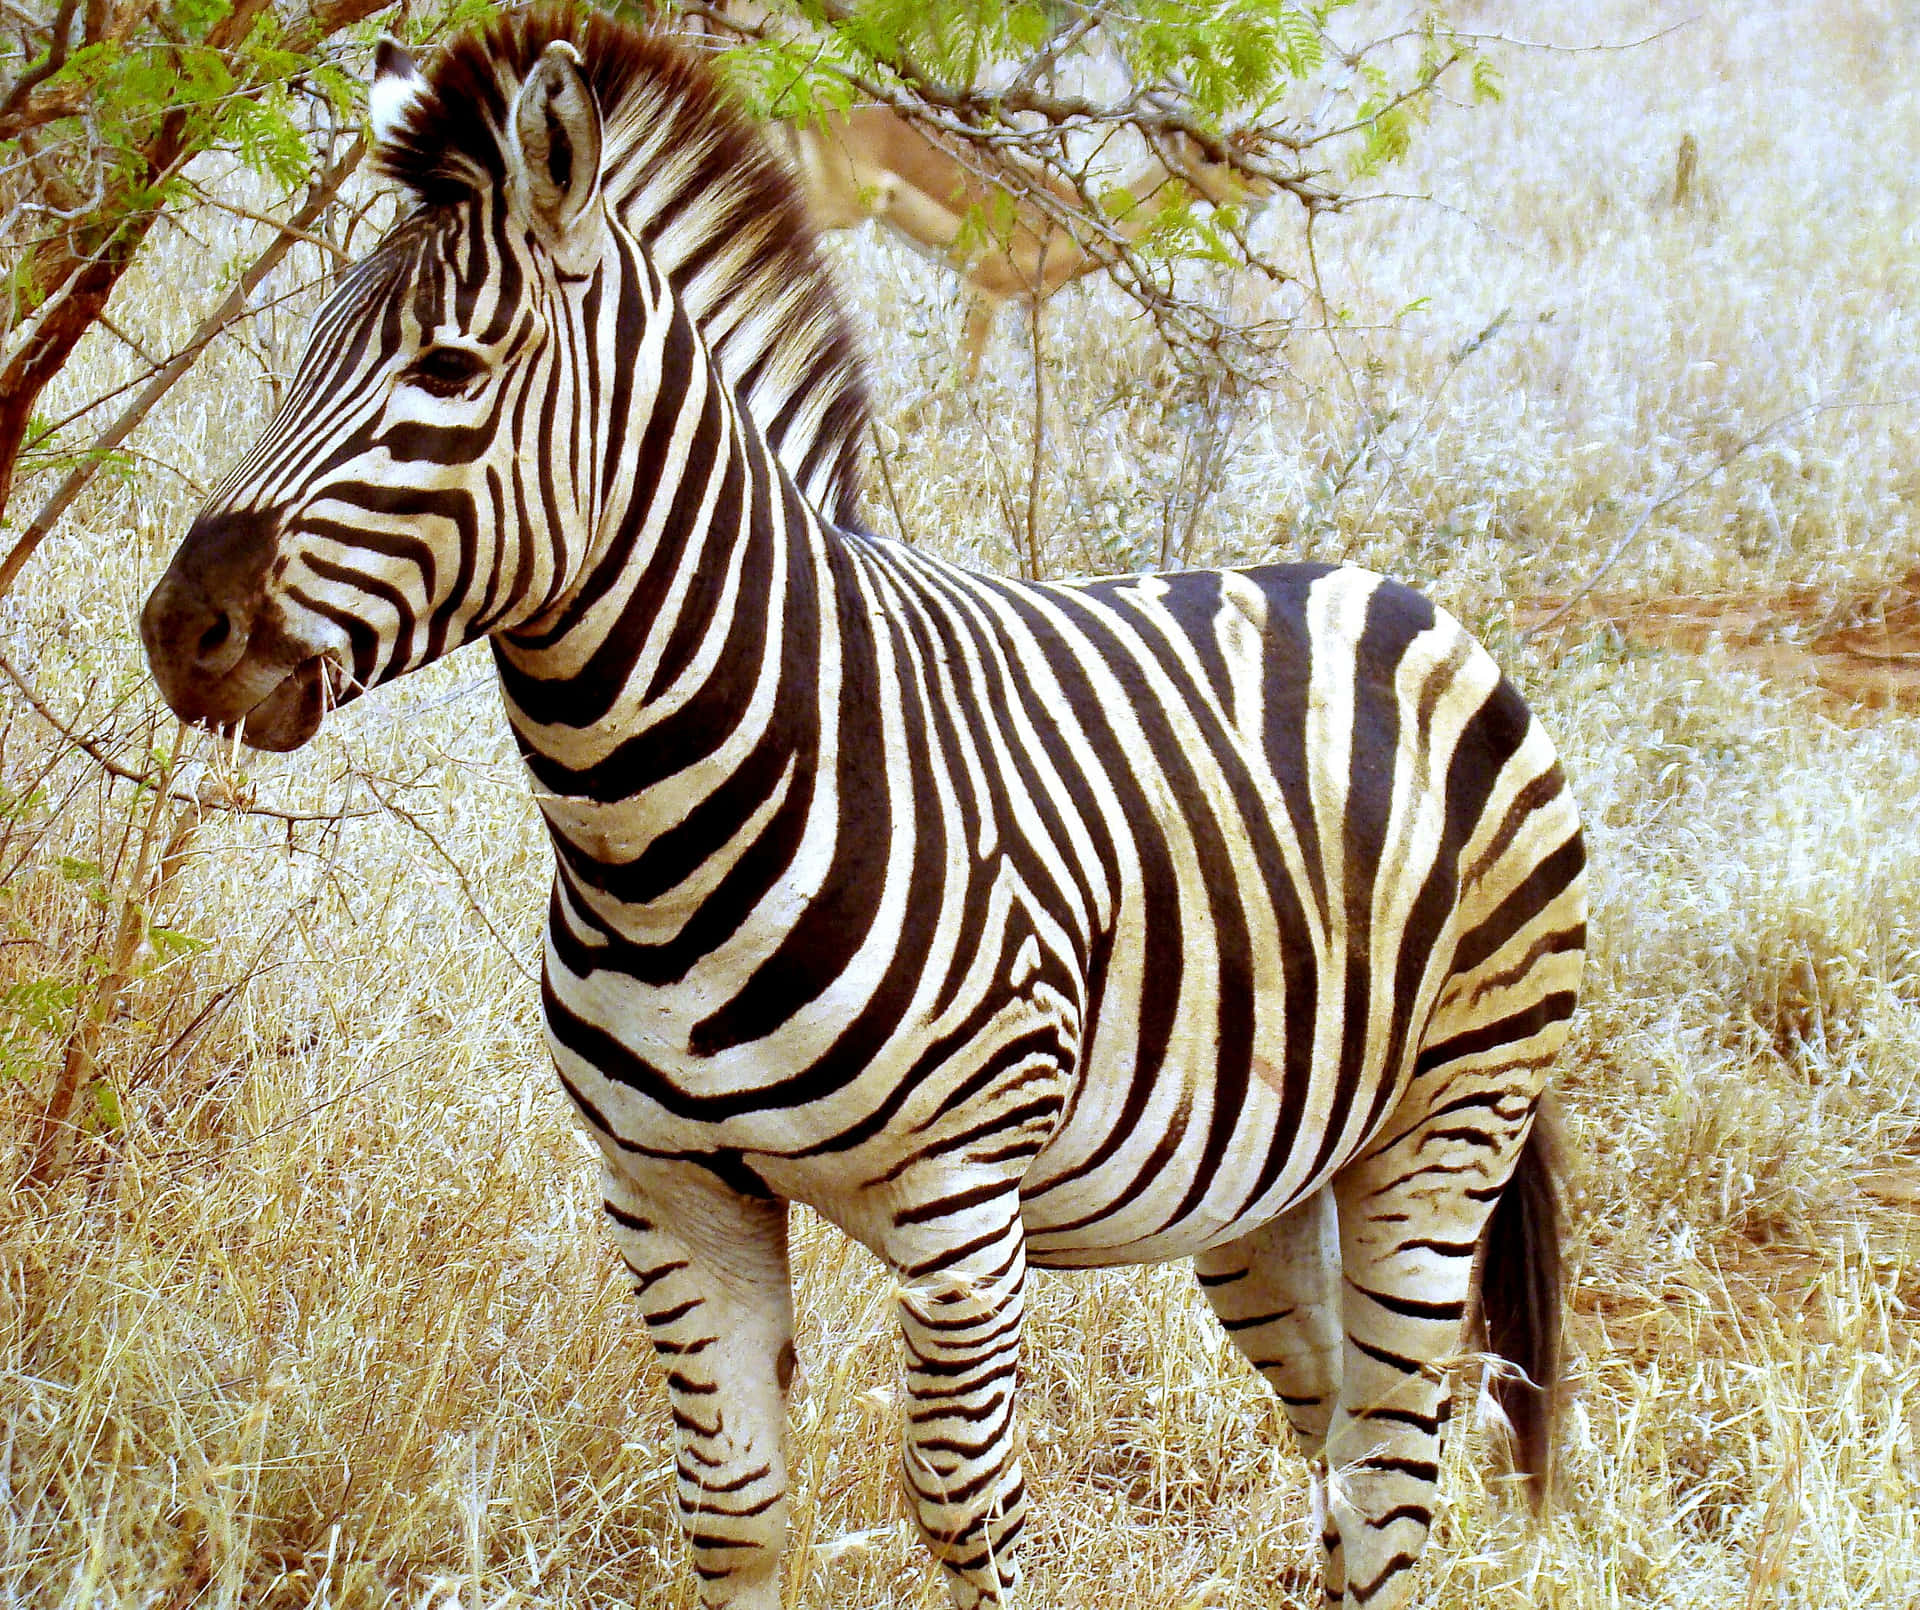 A beautiful striped zebra standing in a grassy savanna.